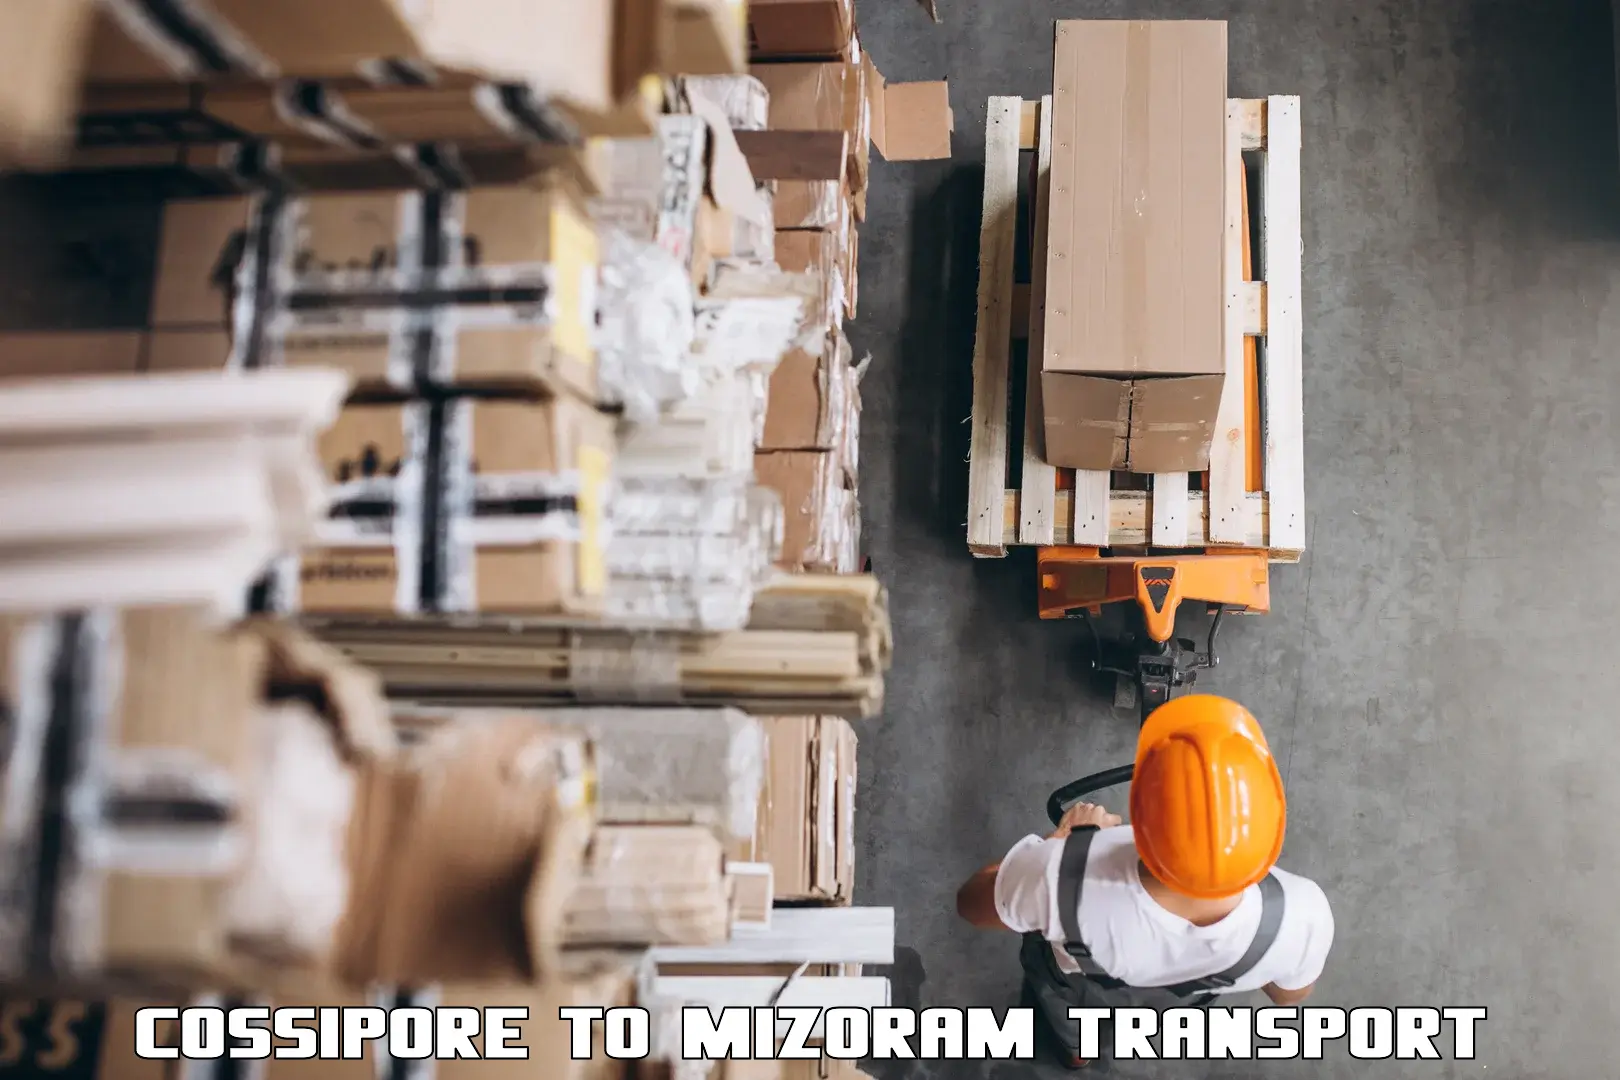 Container transport service Cossipore to Mizoram